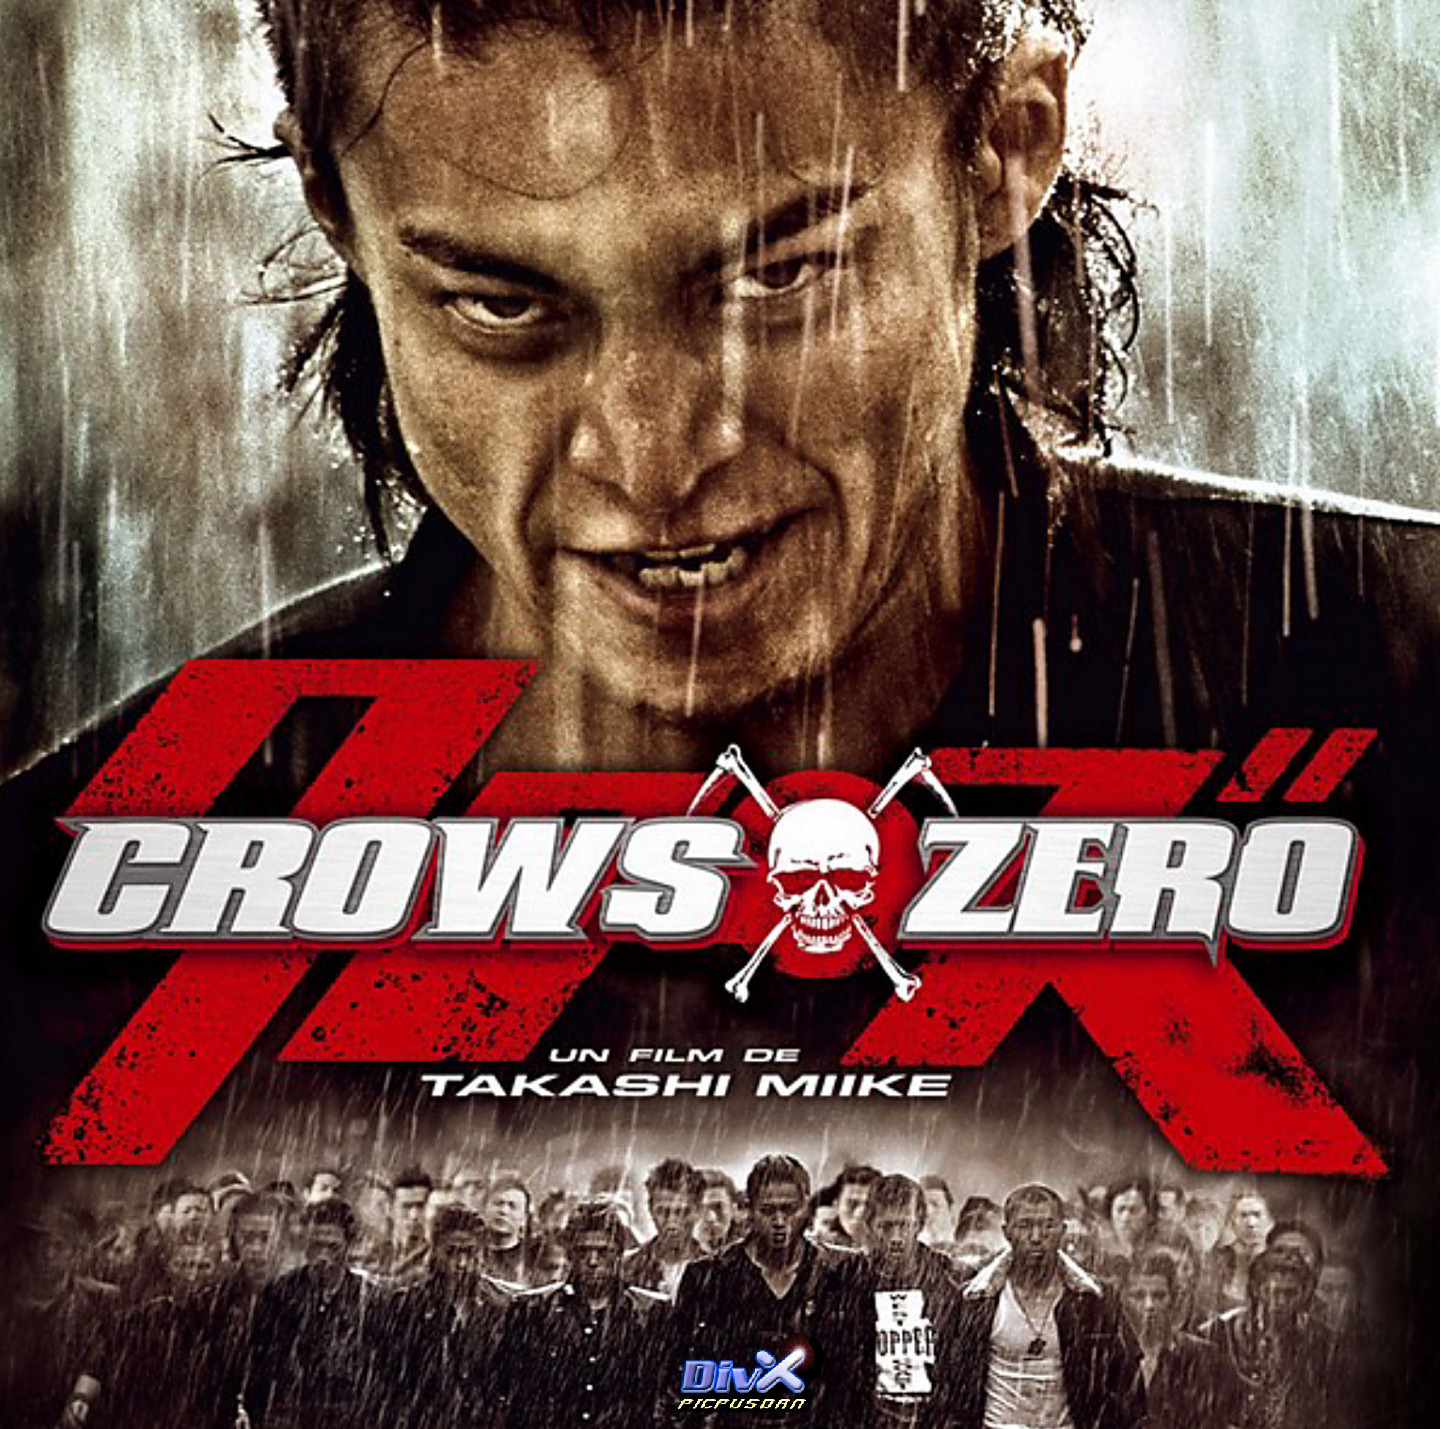 Crows Zero 1